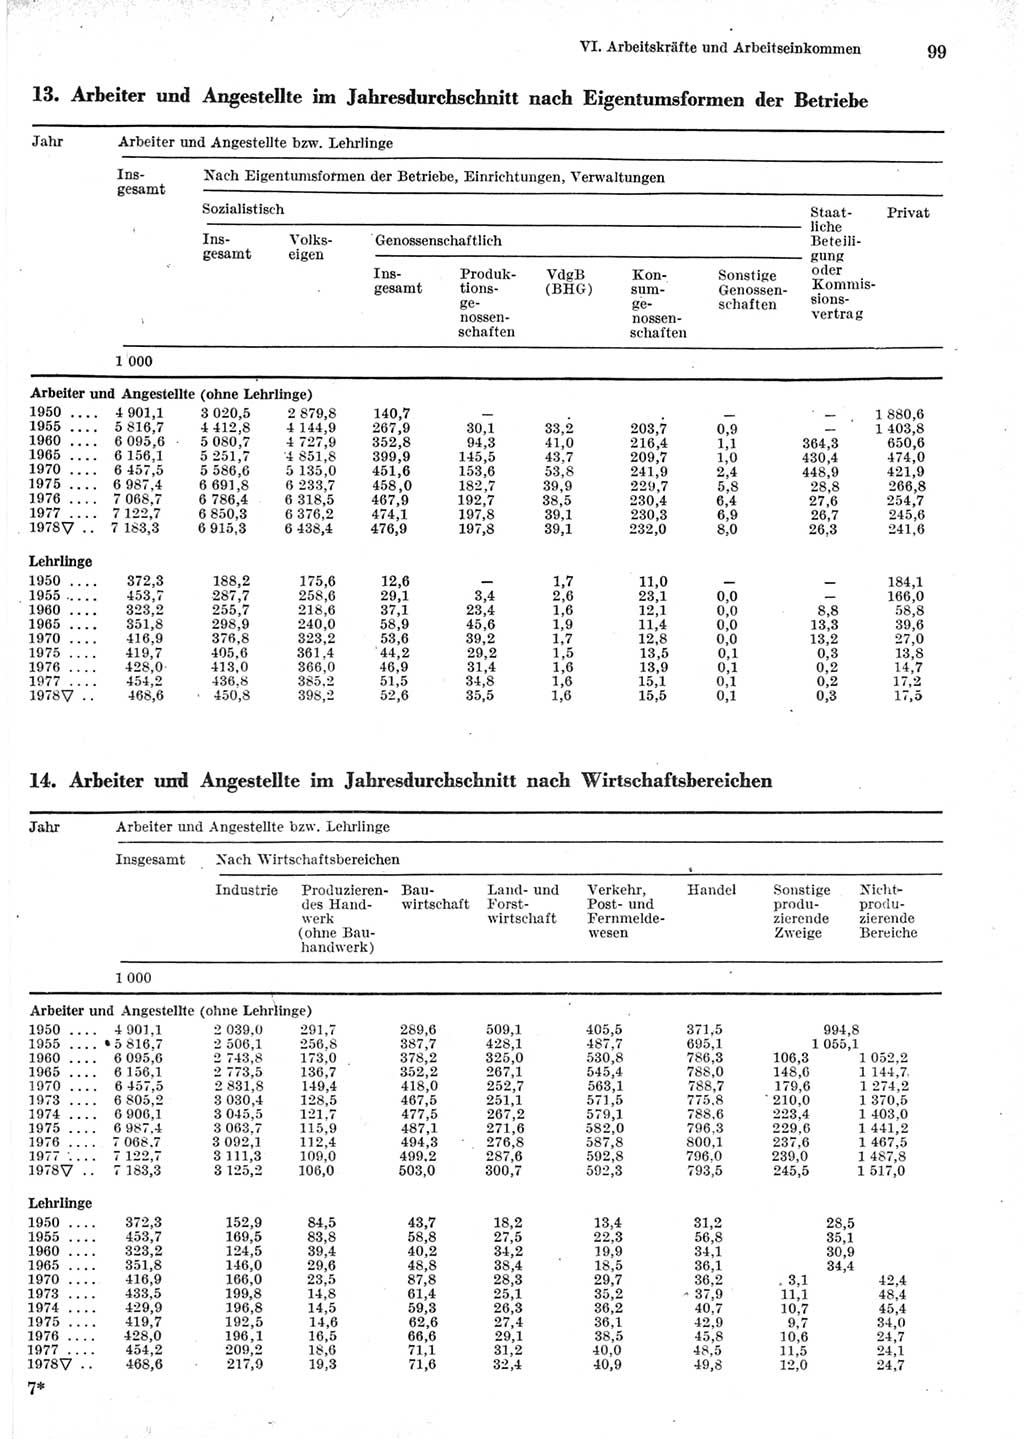 Statistisches Jahrbuch der Deutschen Demokratischen Republik (DDR) 1979, Seite 99 (Stat. Jb. DDR 1979, S. 99)